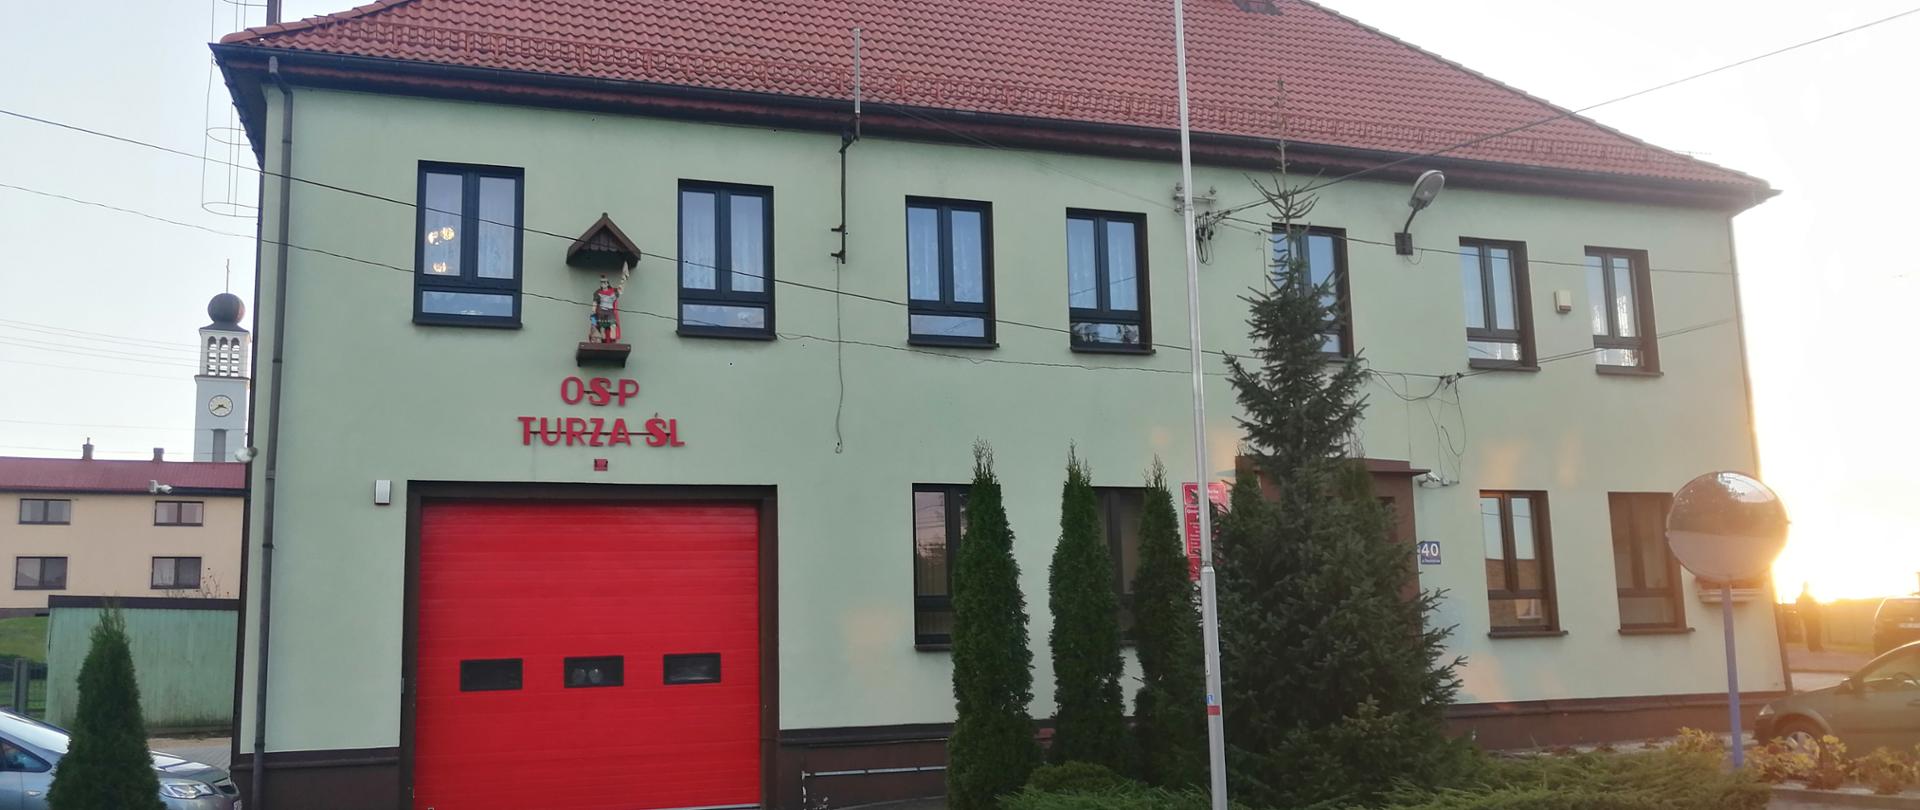 Zdjęcie prezentuje budynek jednostki OSP Turza Śląska